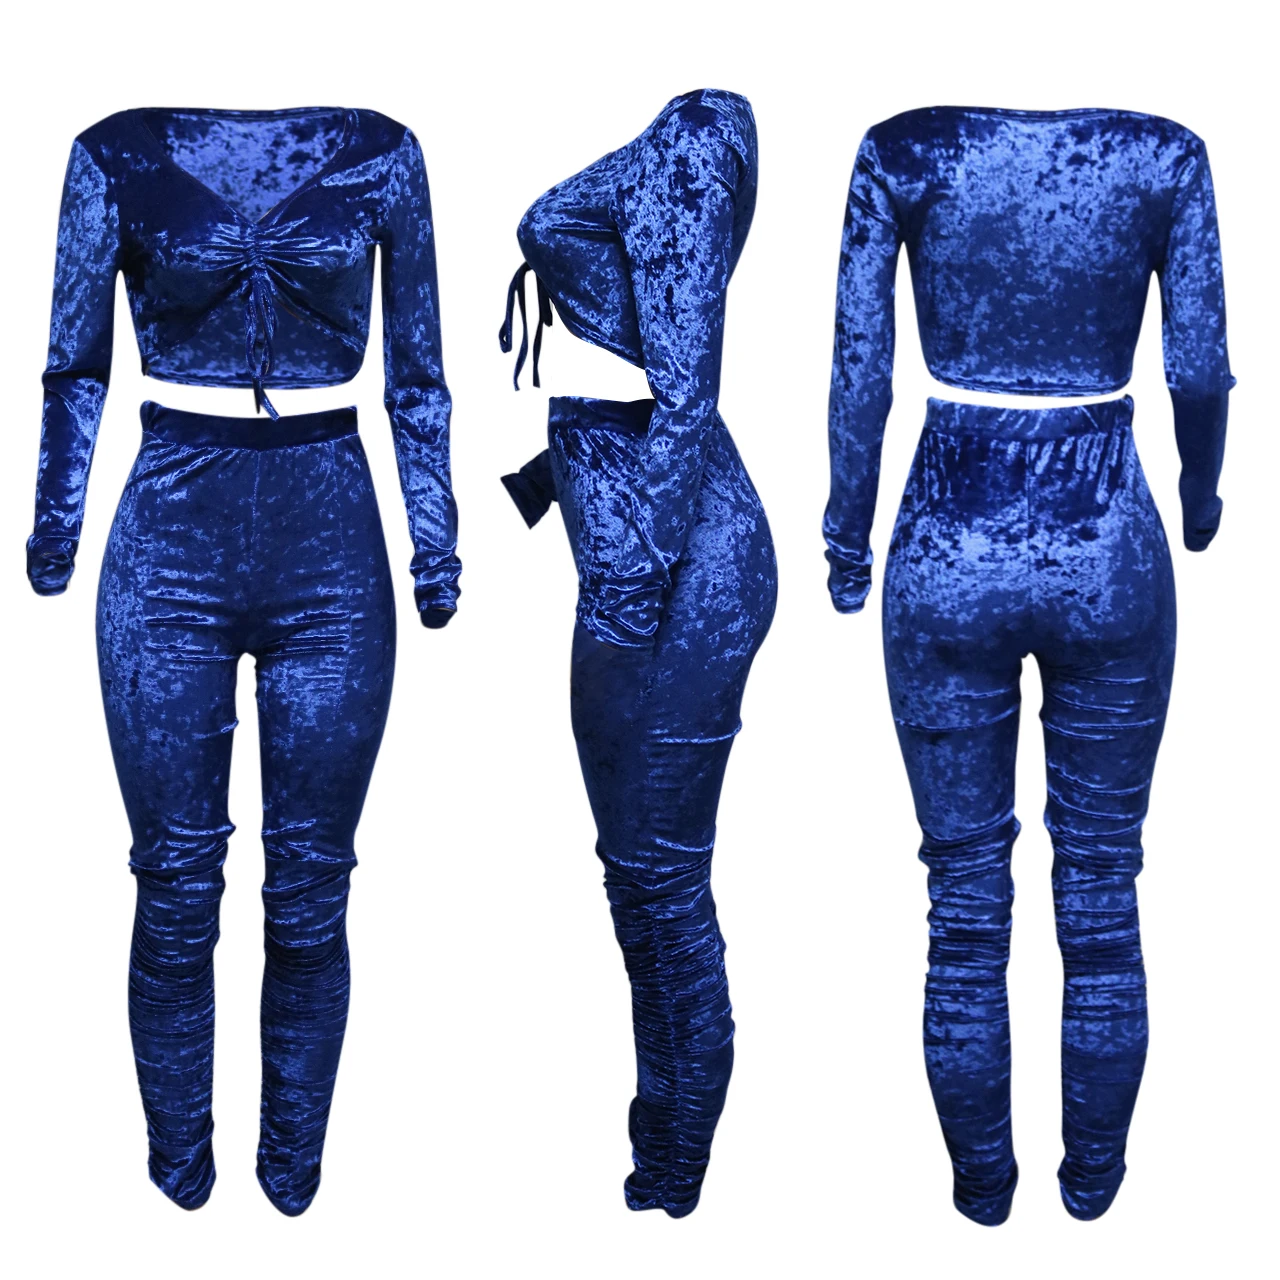 2020 New Women Sweatsuit Sets Velvet Long Sleeve Pleated Fashion Women ...